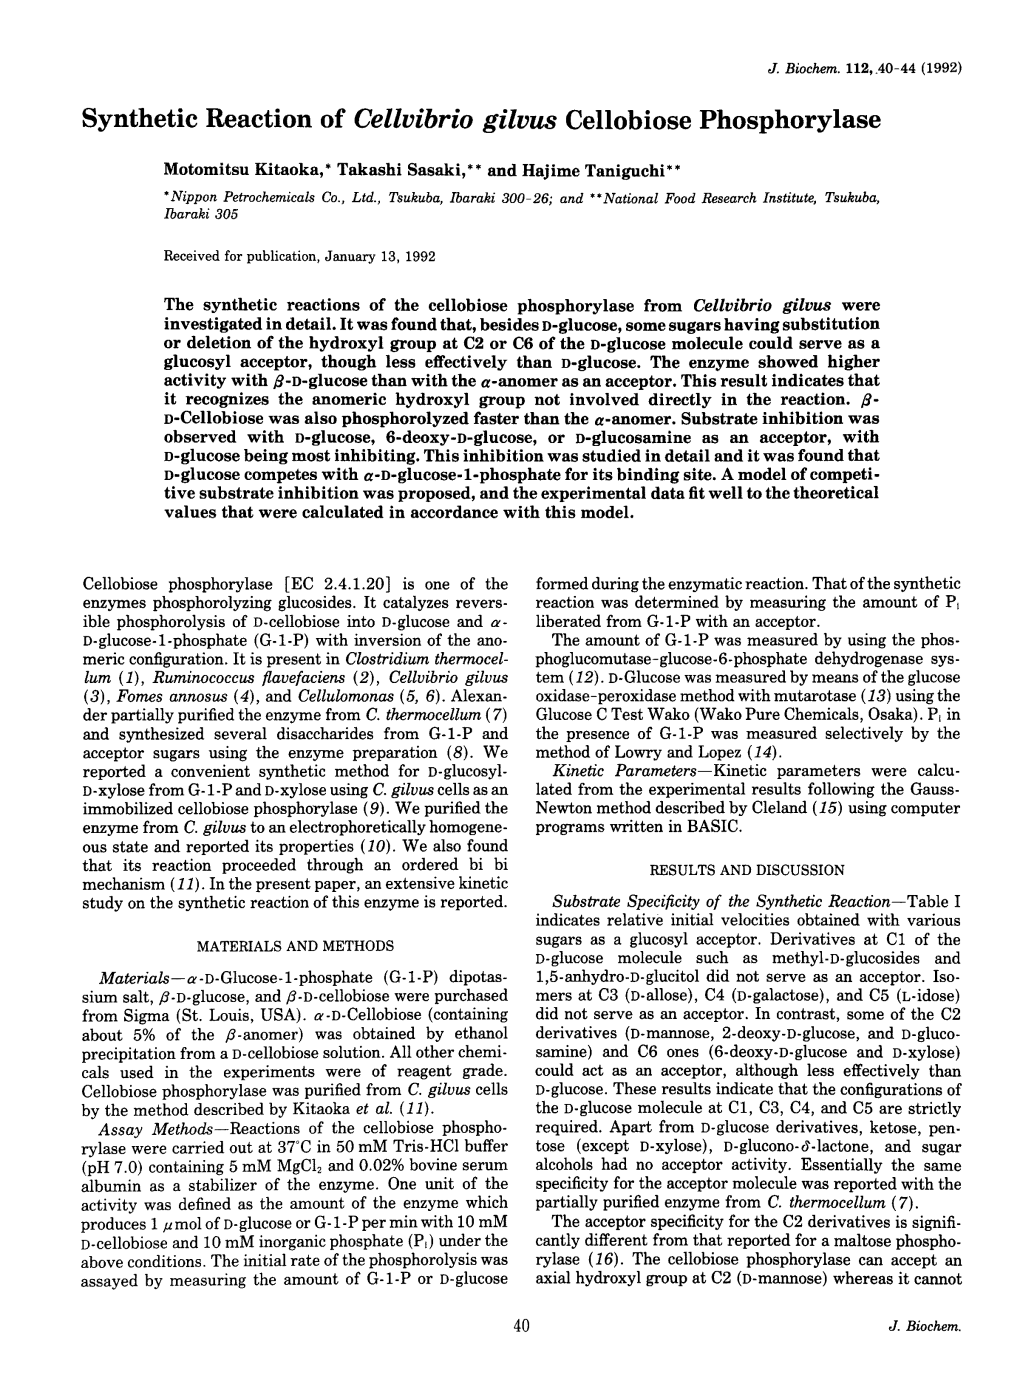 Synthetic Reaction of Cellvibrio Gilvus Cellobiose Phosphorylase